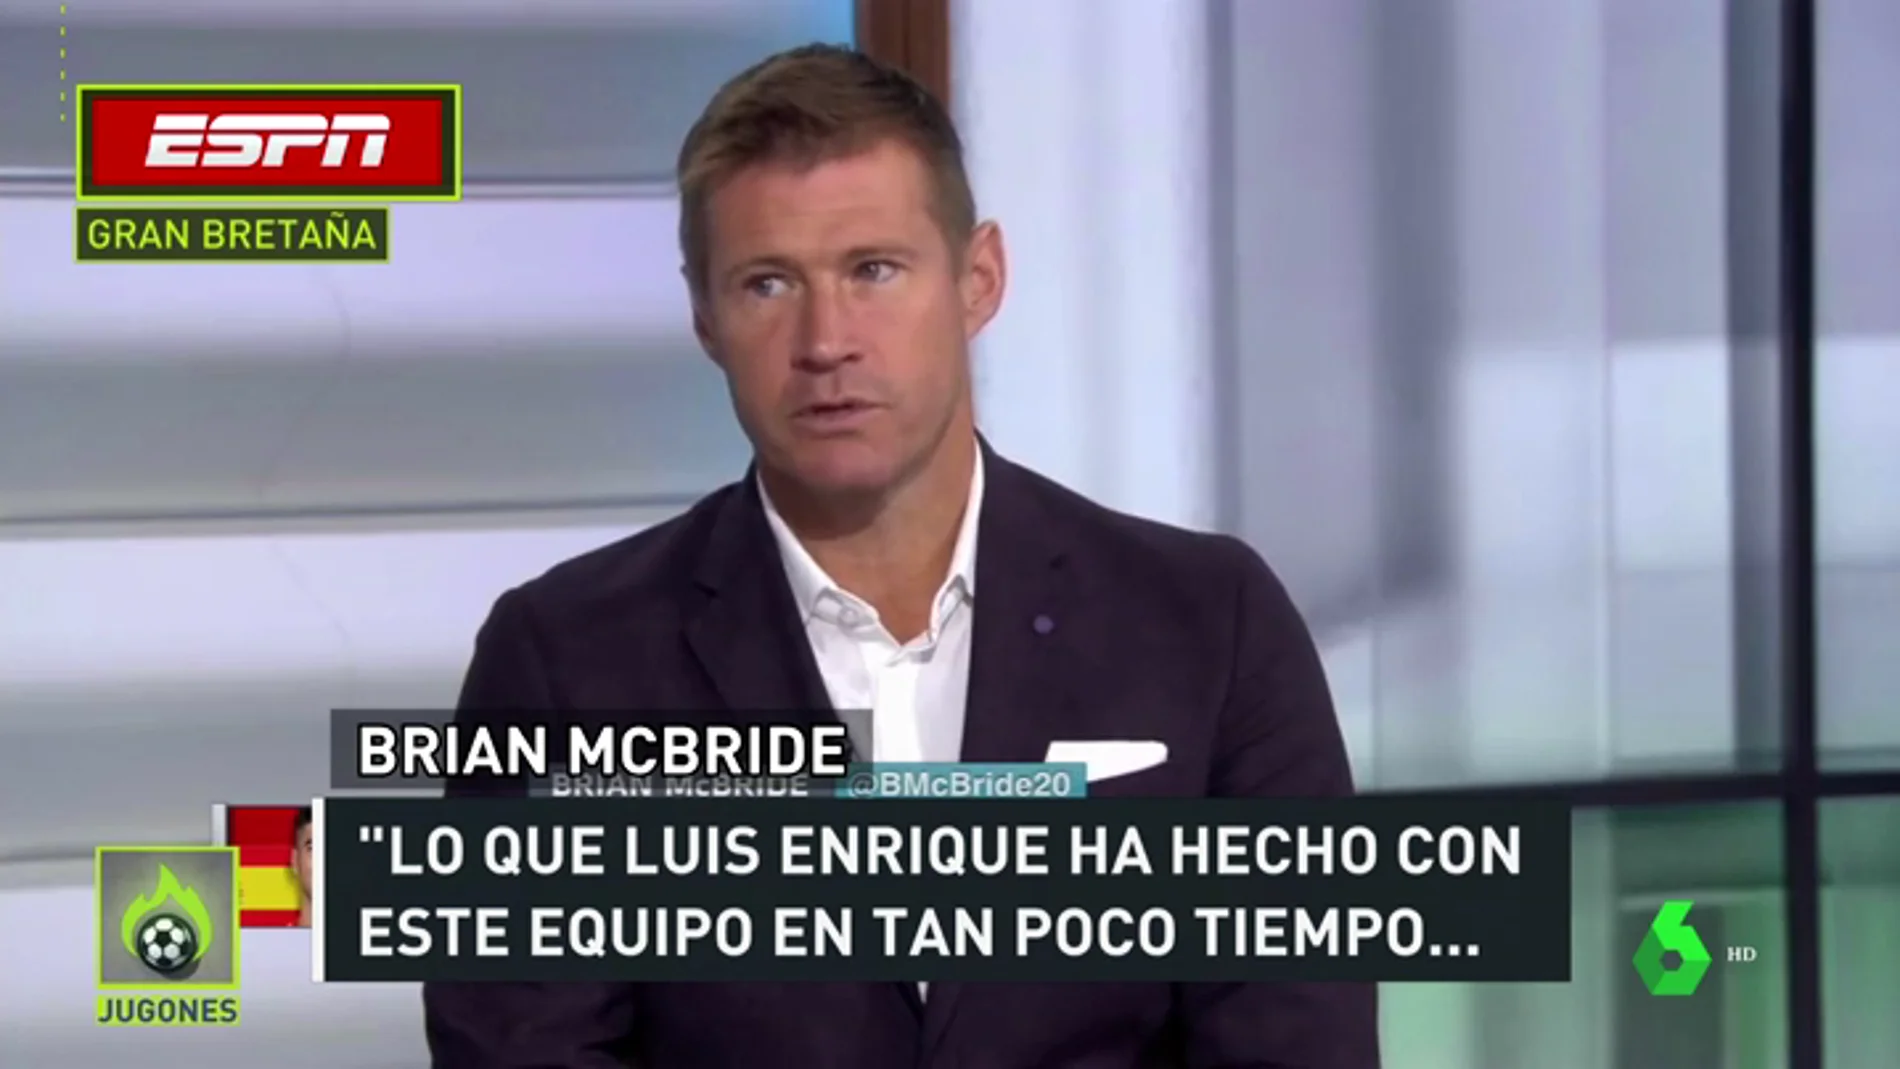 Elogios en todo el mundo hacia la Selección de Luis Enrique: "El futuro parece brillante para España"